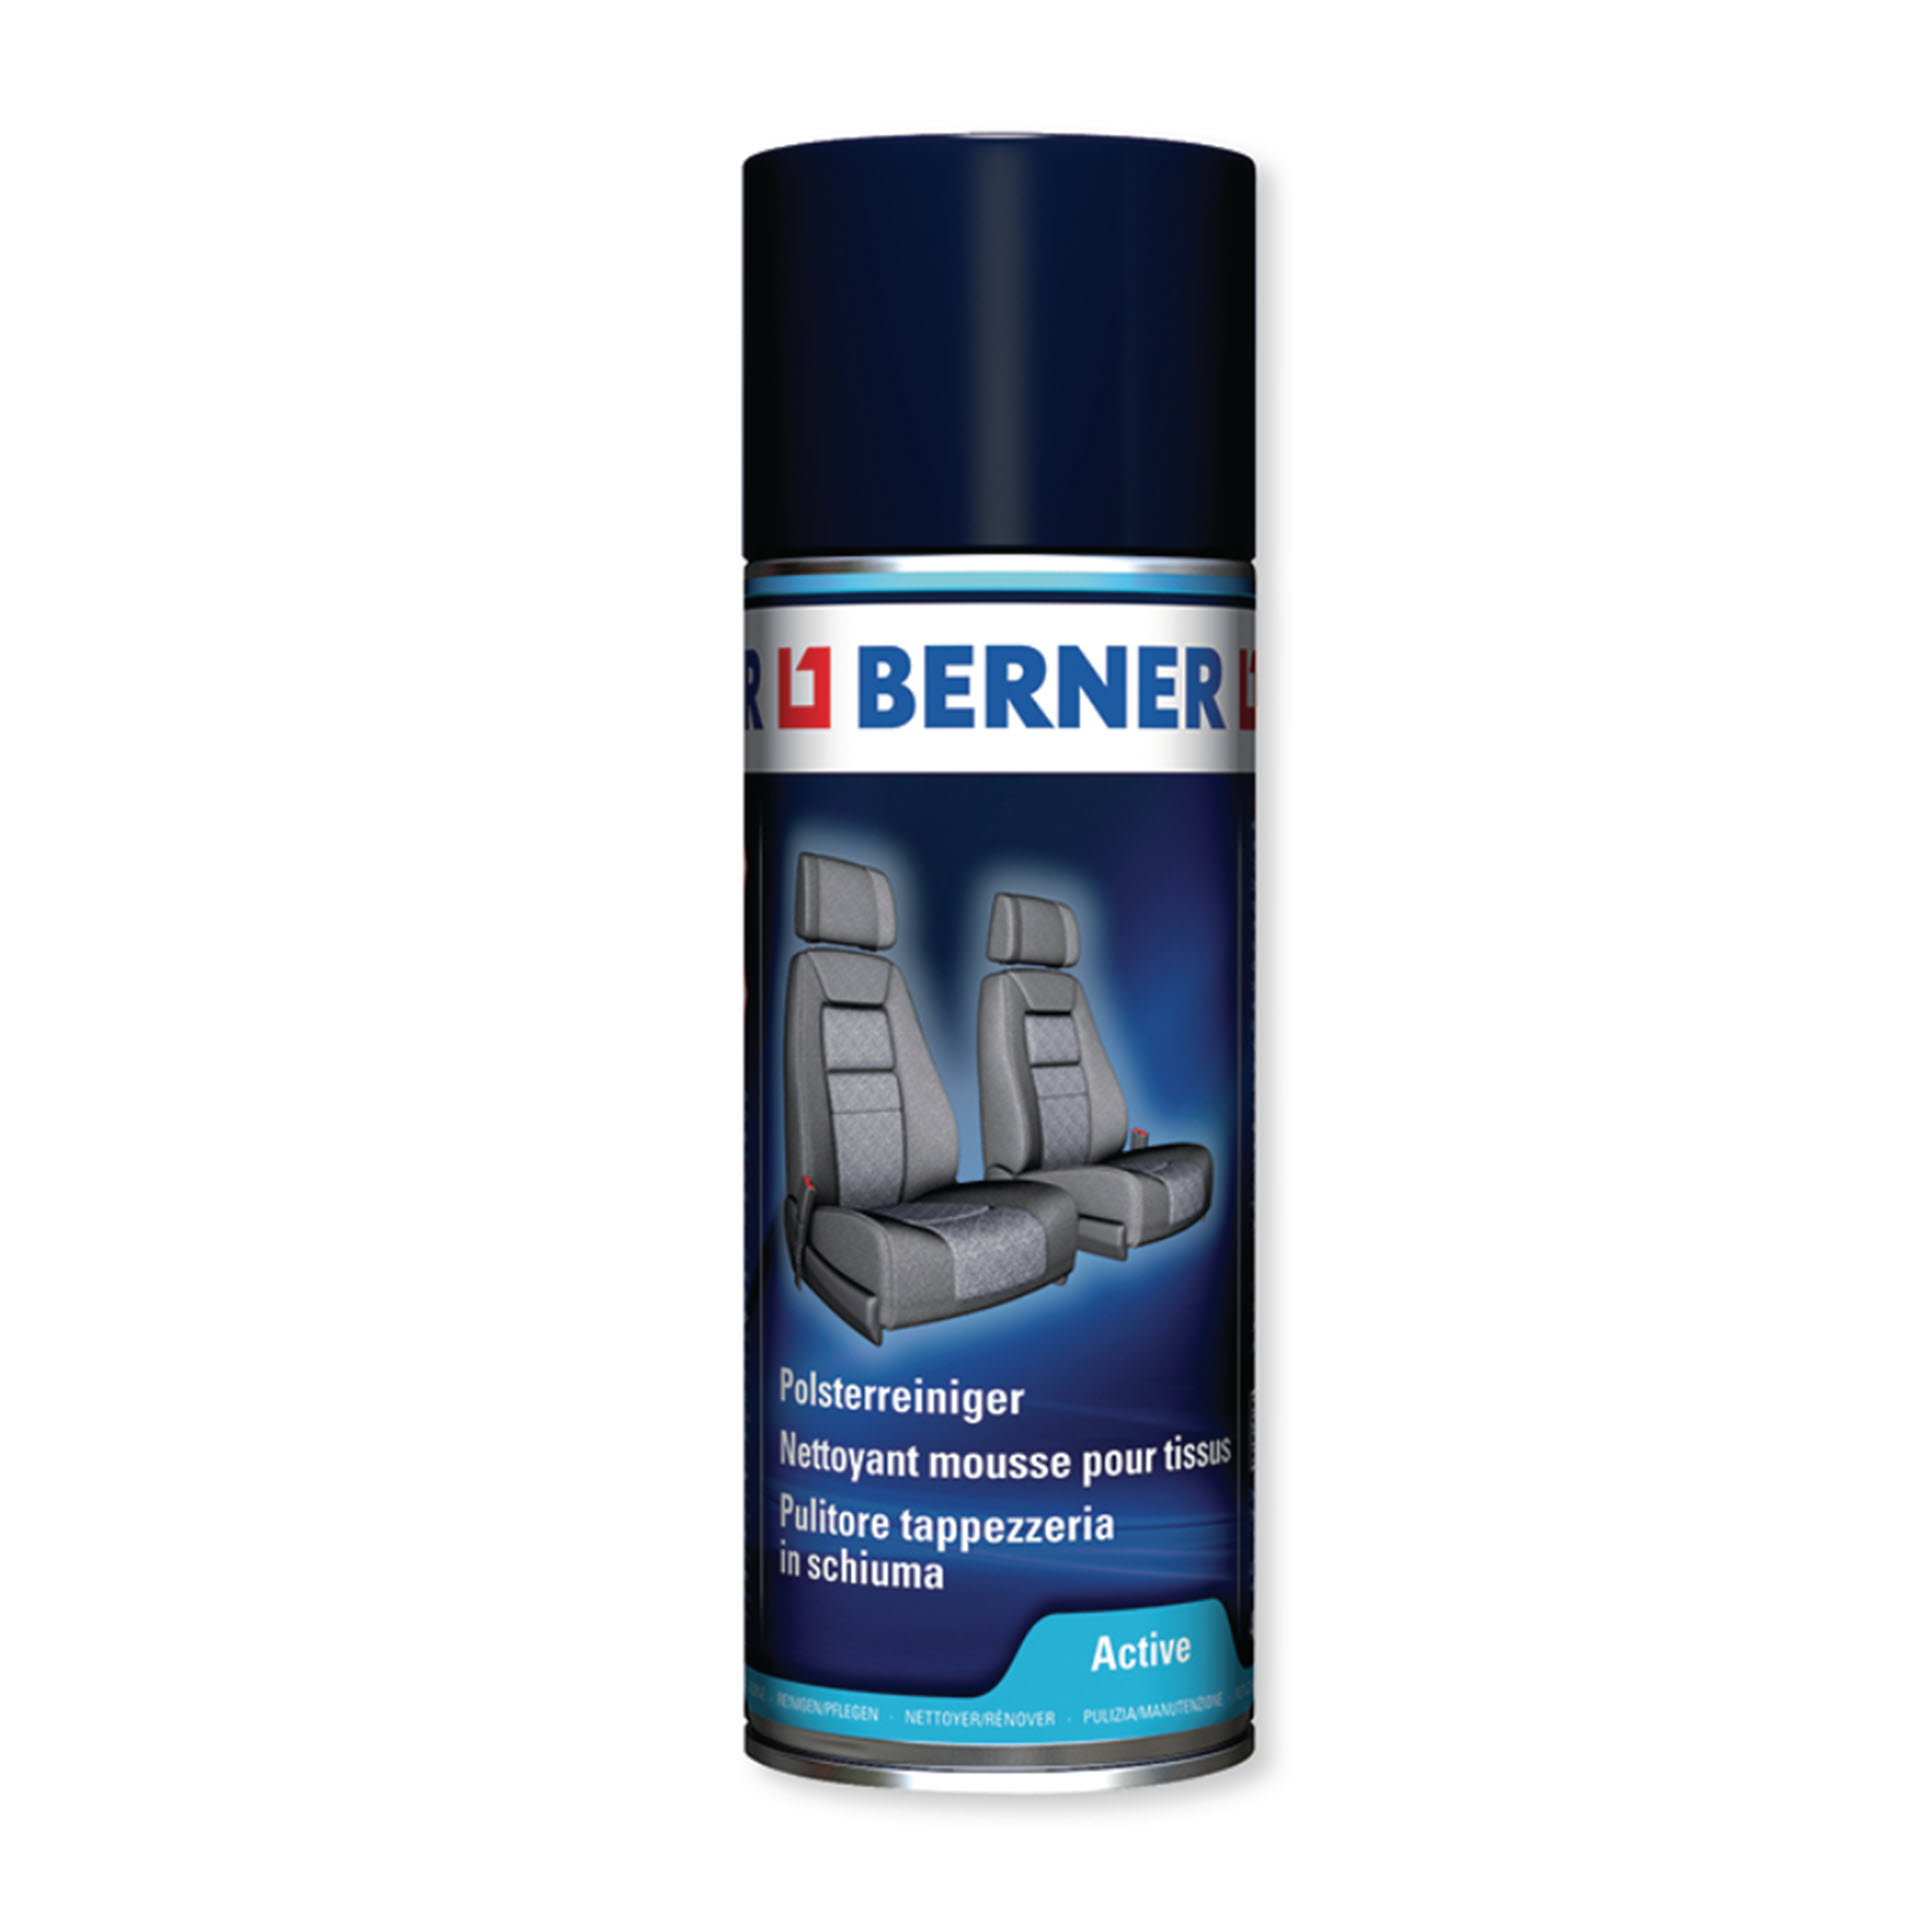 Berner Polsterreiniger Active - 400 ml Spraydose